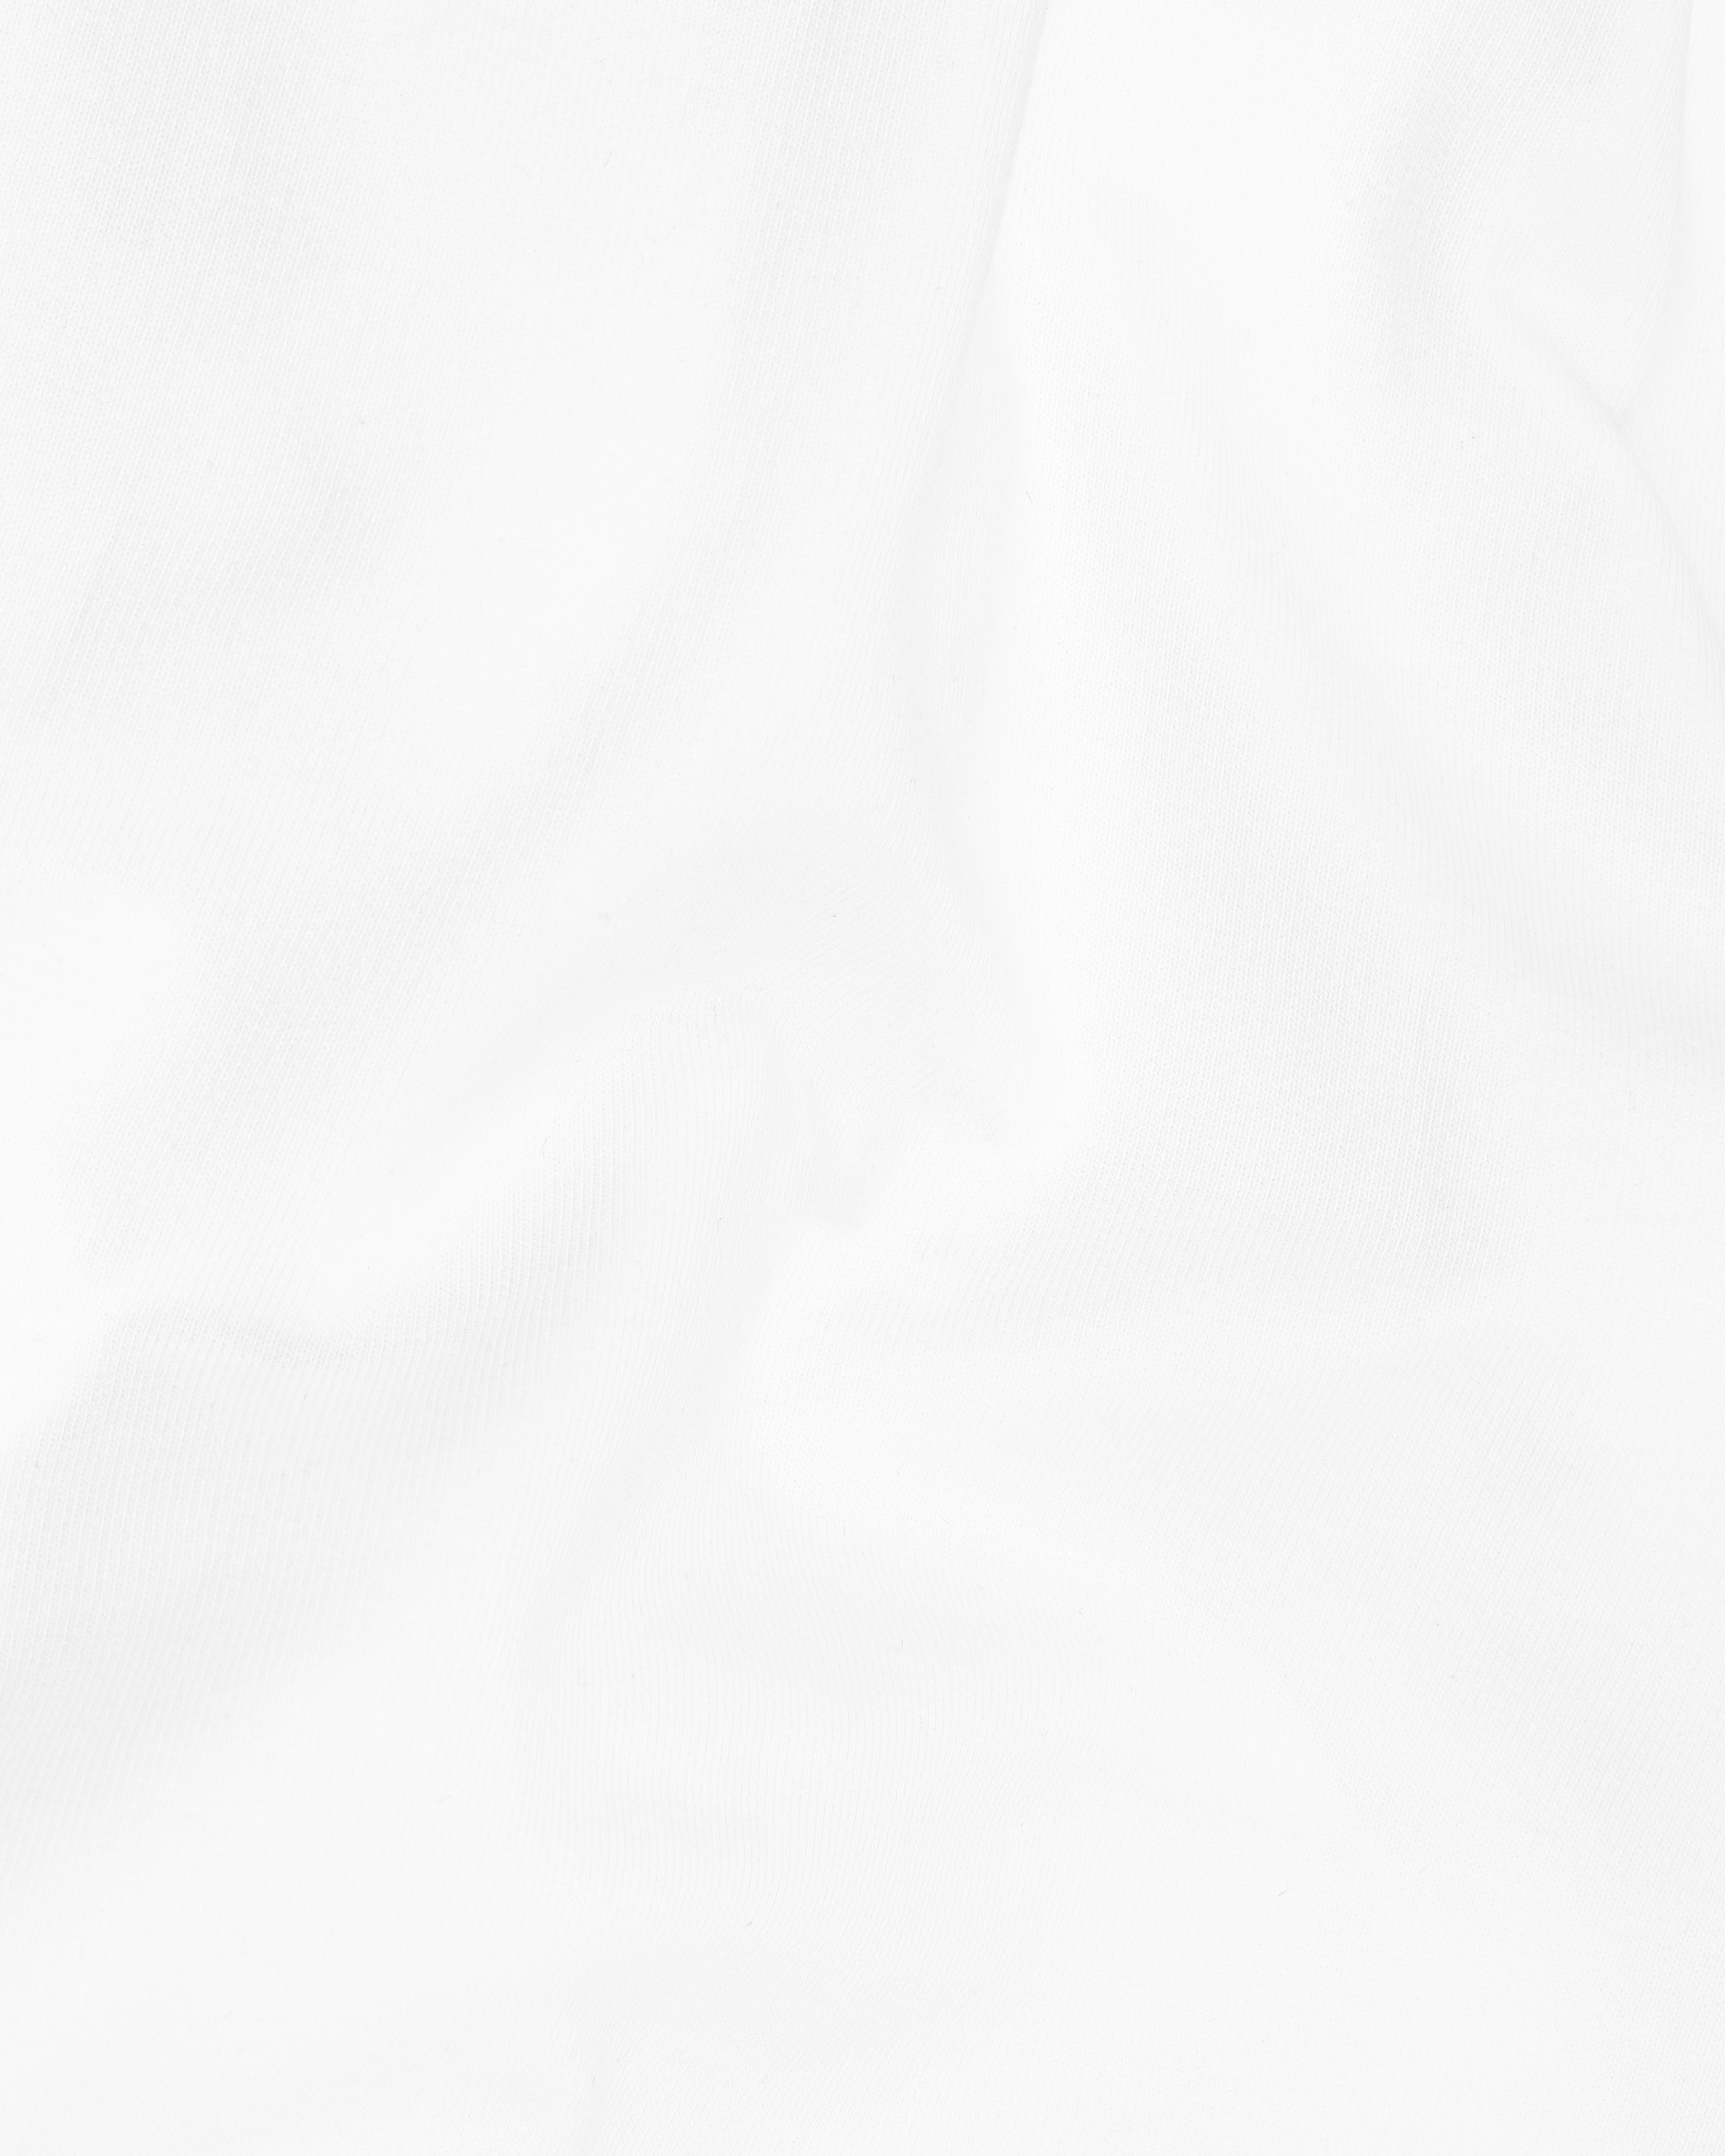 Bright White Super Soft Premium Cotton Turtleneck Pullover TS612-S, TS612-M, TS612-L, TS612-XL, TS612-XXL, TS612-3XL, TS612-4XL